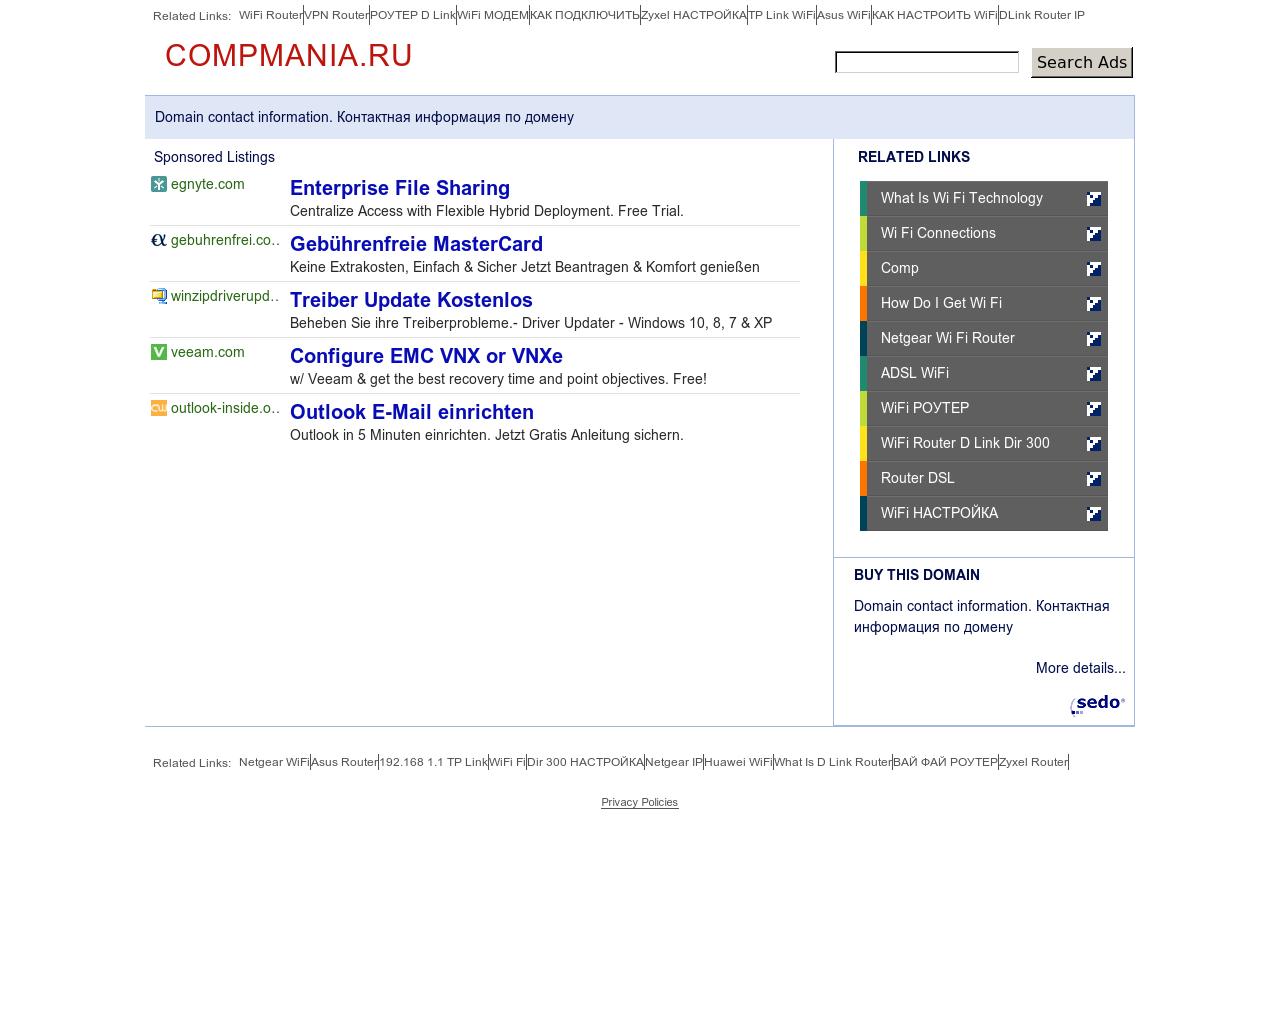 Изображение сайта compmania.ru в разрешении 1280x1024